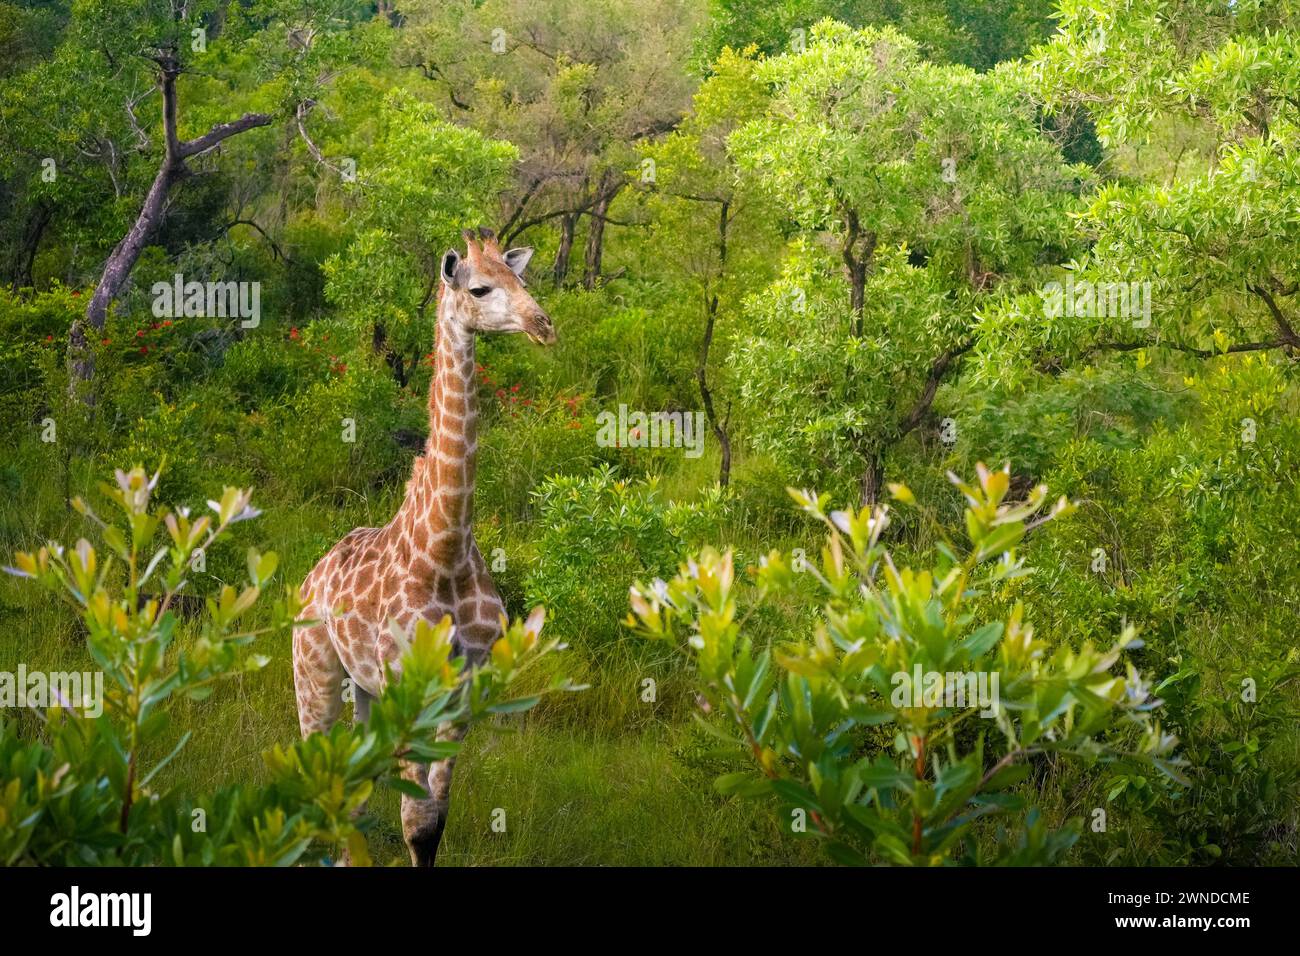 Une girafe solitaire se dresse gracieusement avec son long cou surplombant la végétation luxuriante dans le parc national Kruger. Entouré d'une variété d'arbres et shr Banque D'Images